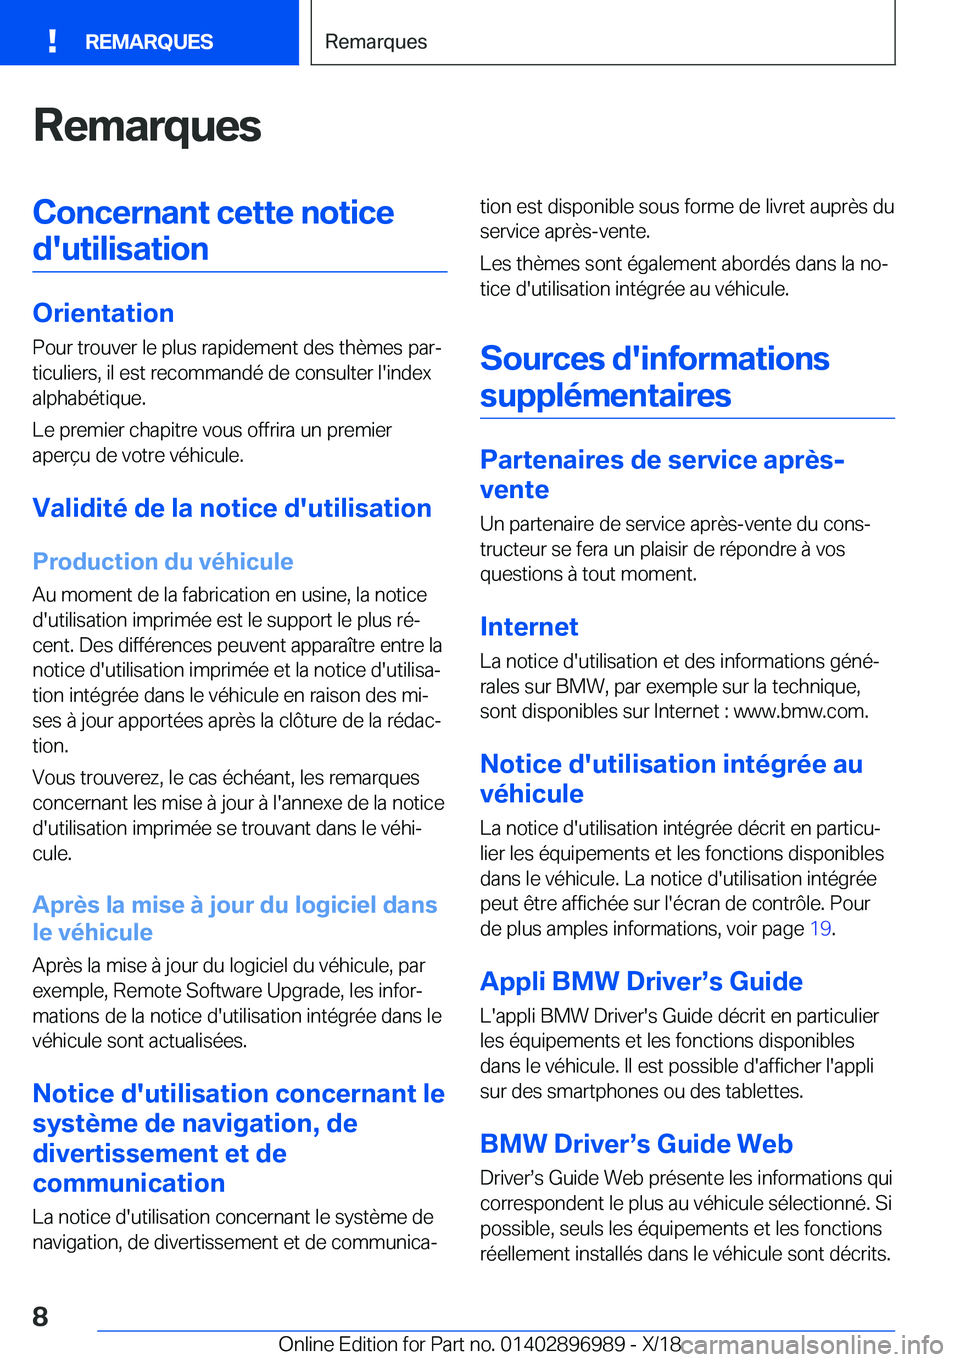 BMW Z4 2019  Notices Demploi (in French) �R�e�m�a�r�q�u�e�s�C�o�n�c�e�r�n�a�n�t��c�e�t�t�e��n�o�t�i�c�e�d�'�u�t�i�l�i�s�a�t�i�o�n
�O�r�i�e�n�t�a�t�i�o�n �P�o�u�r��t�r�o�u�v�e�r��l�e��p�l�u�s��r�a�p�i�d�e�m�e�n�t��d�e�s��t�h�è�m�